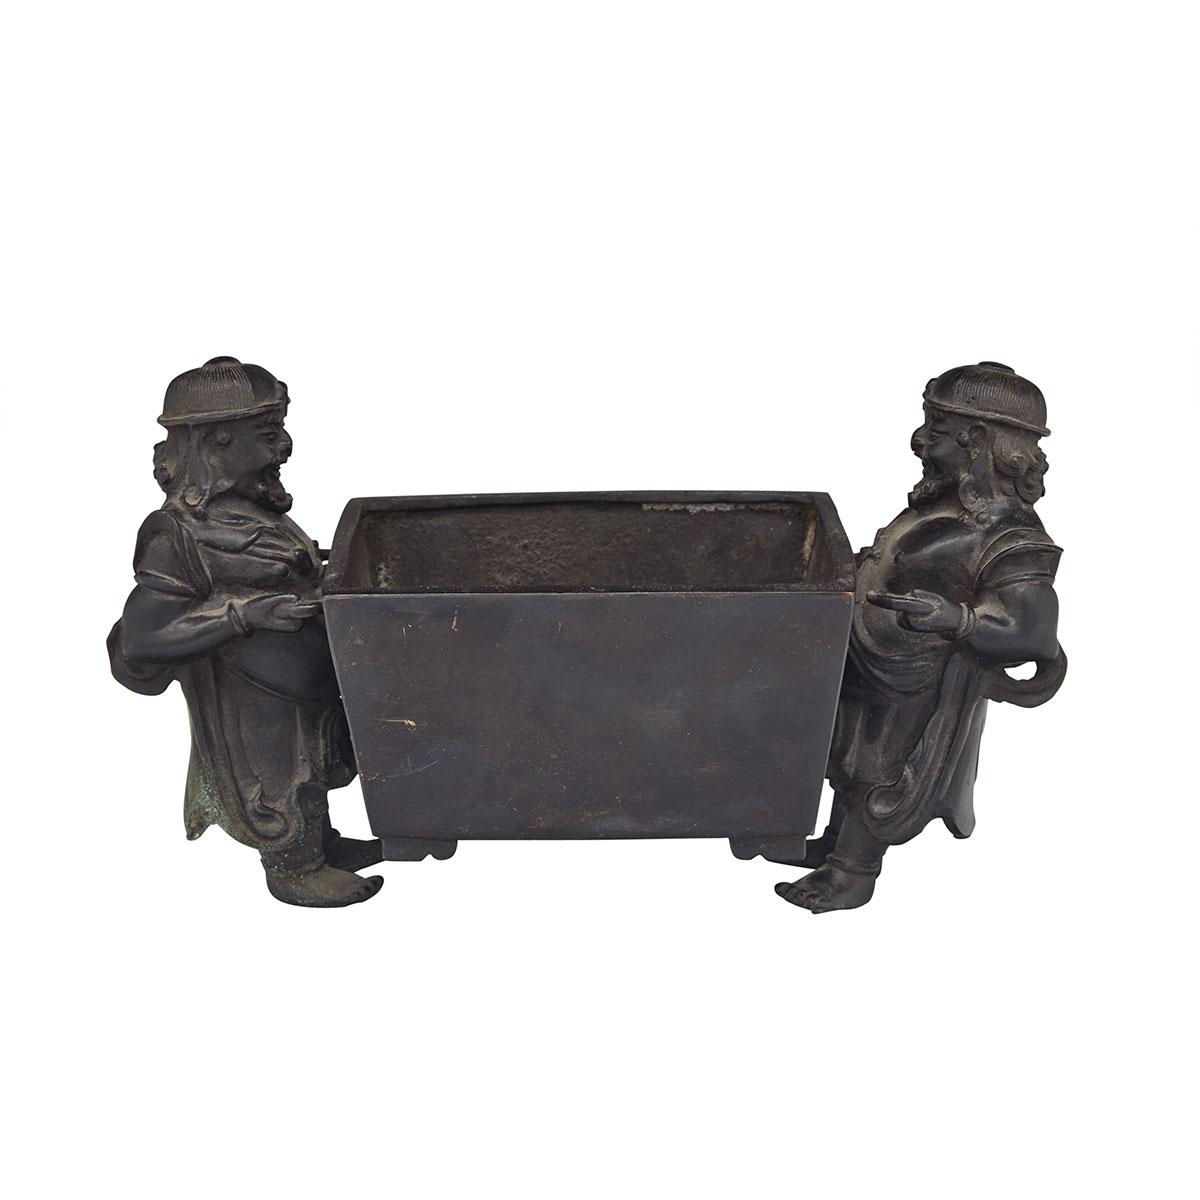 Bronze ‘Foreigner Handles’ Censer, 16th/17th Century